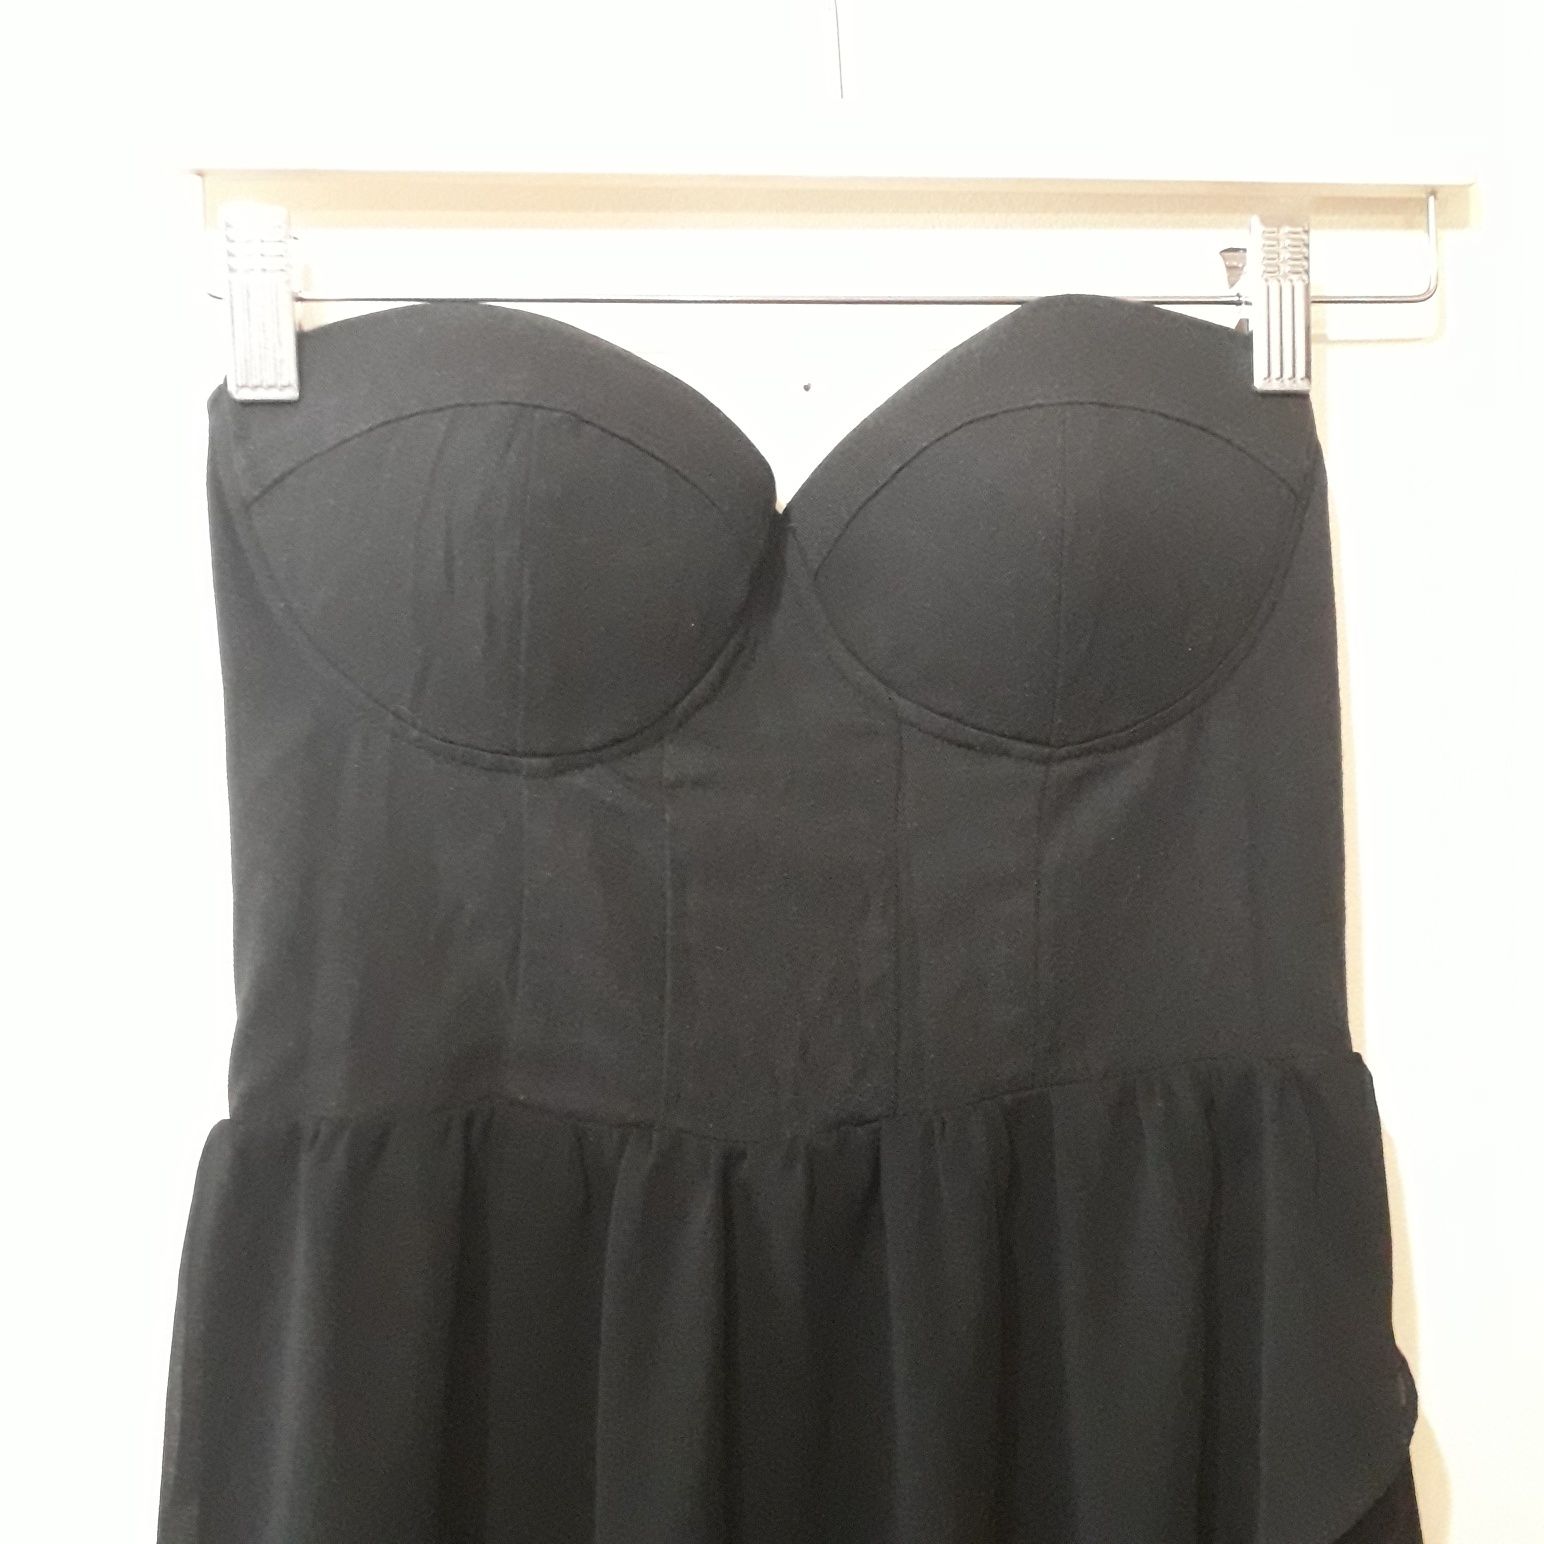 Długa czarna sukienka z odkrytymi ramionami bez rękawów S/M